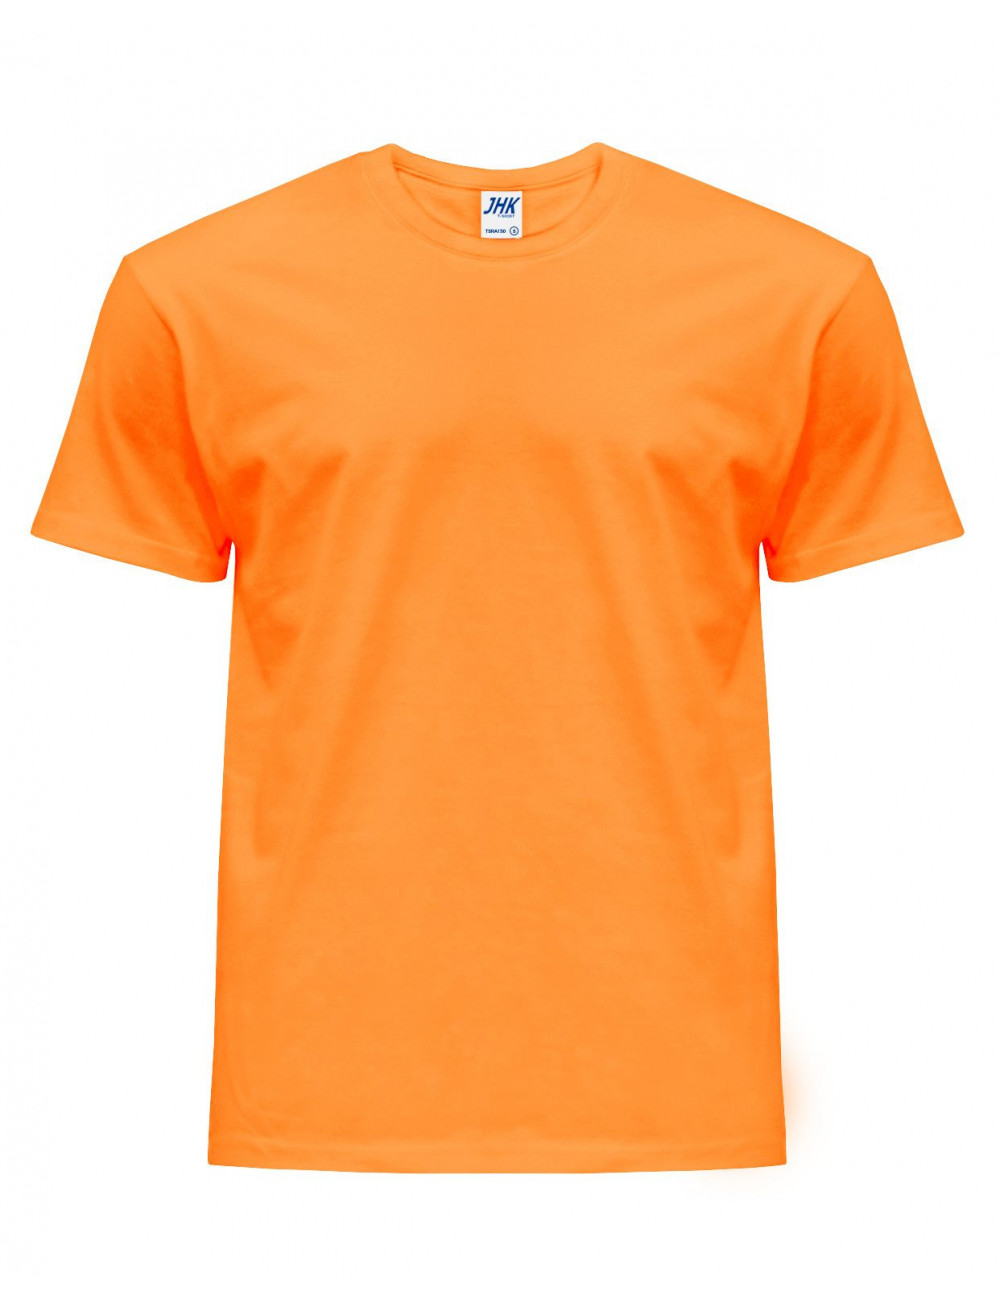 Koszulka męska tsra 150 regular t-shirt orf - orange fluor Jhk